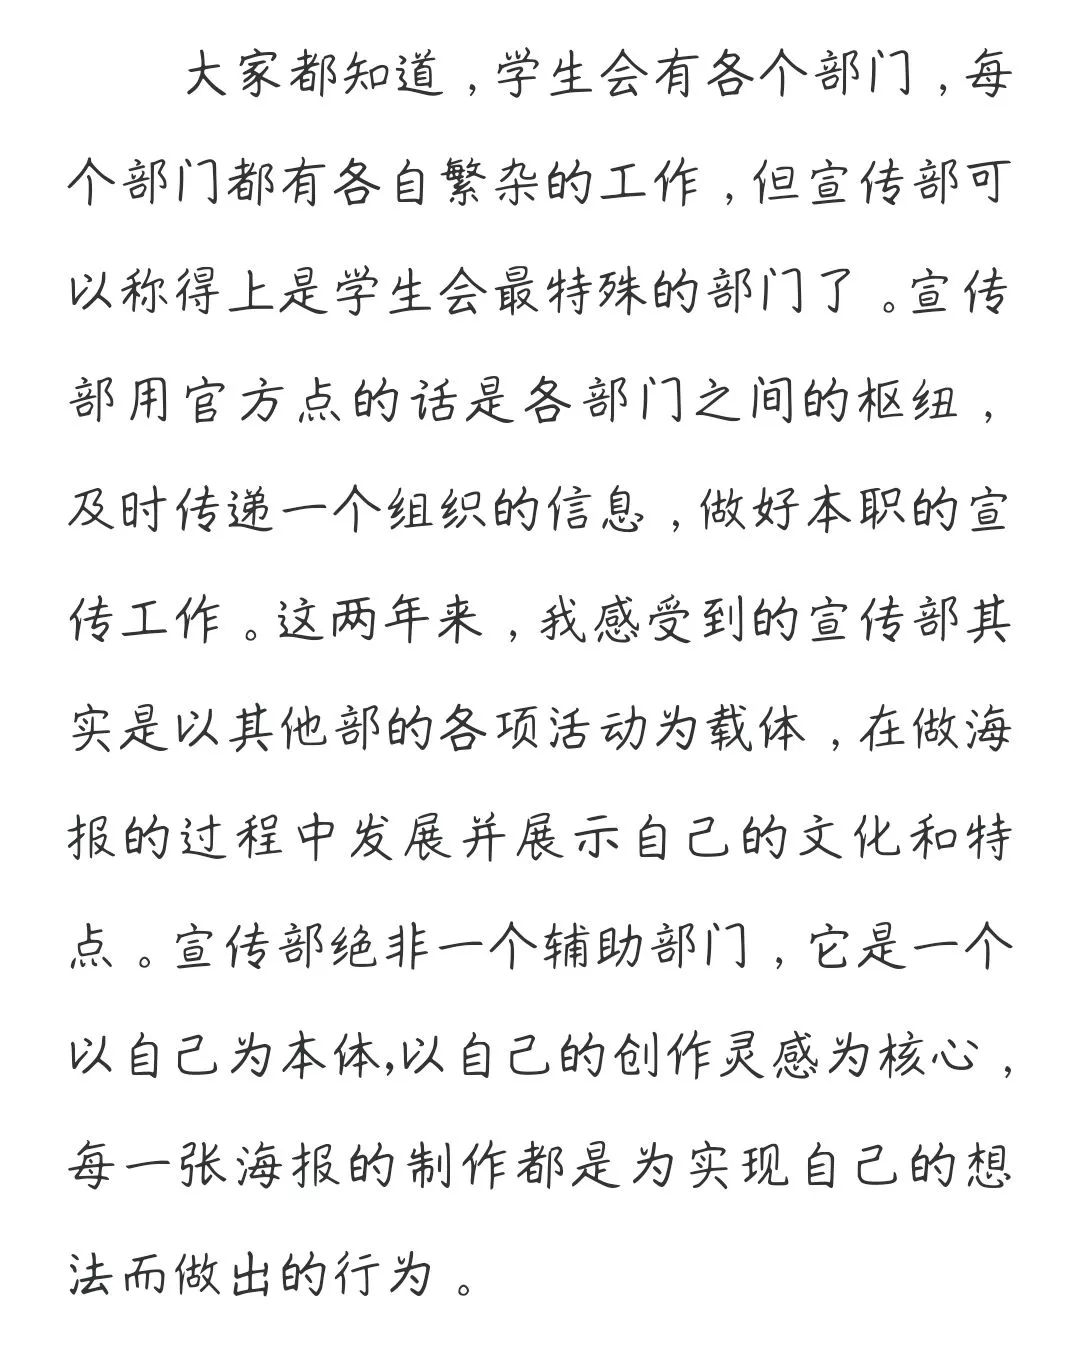 赵钦竞选岗位:宣传部副部长述职演讲王天敏原岗位:宣传部副部长未完